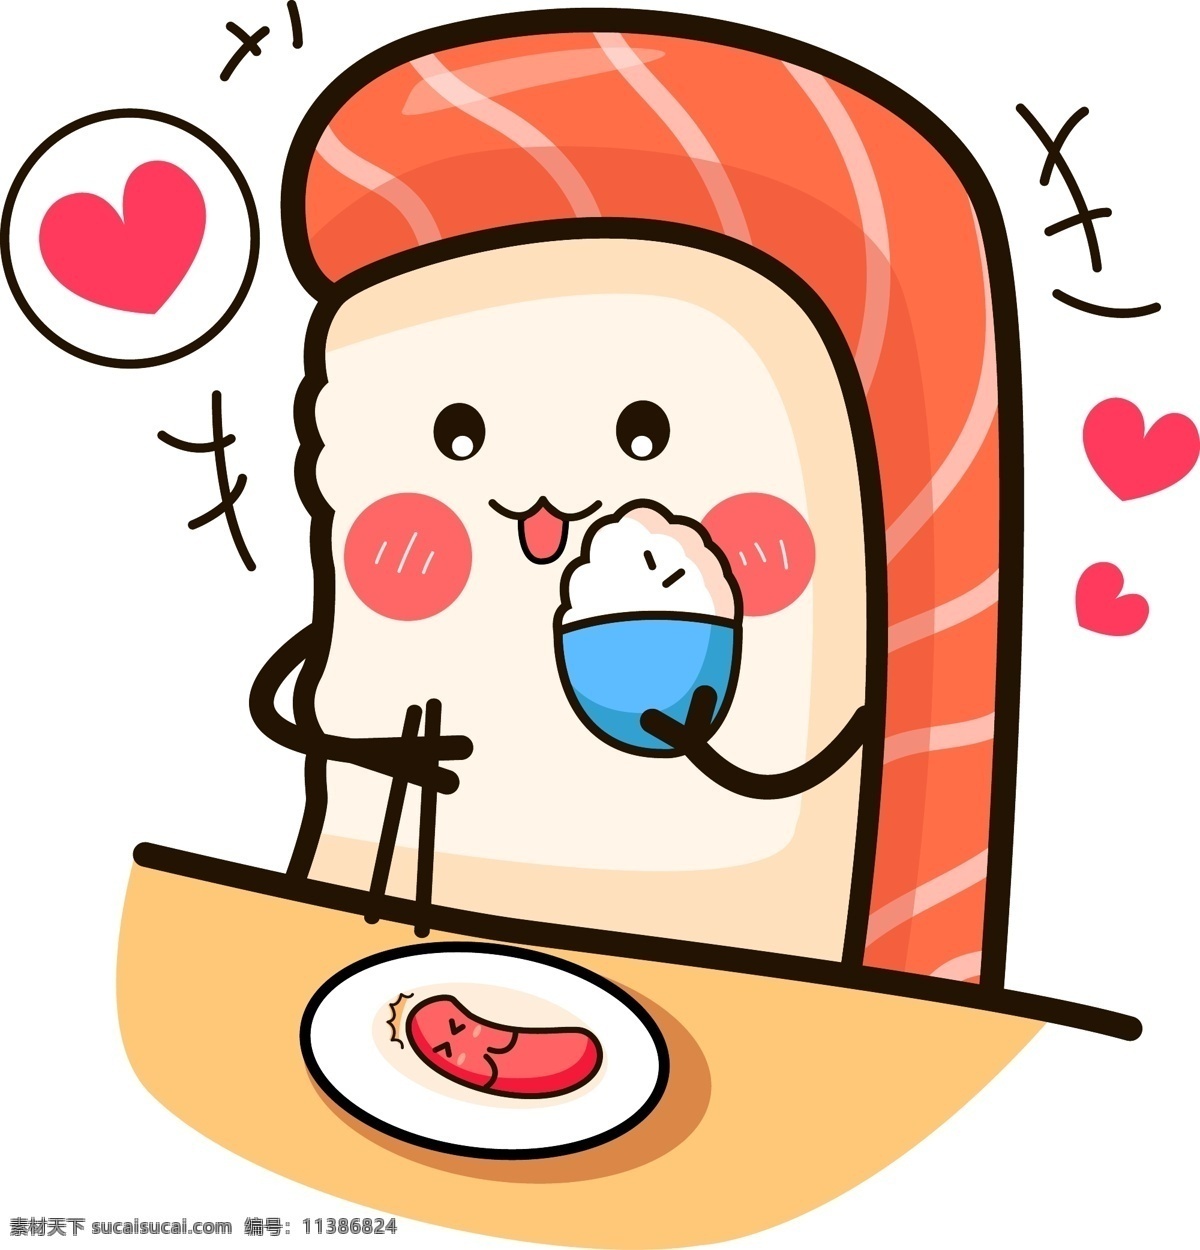 寿司 食物 表情 卡通 矢量 商用 元素 装饰 表情包 开心 吃香肠 可商用